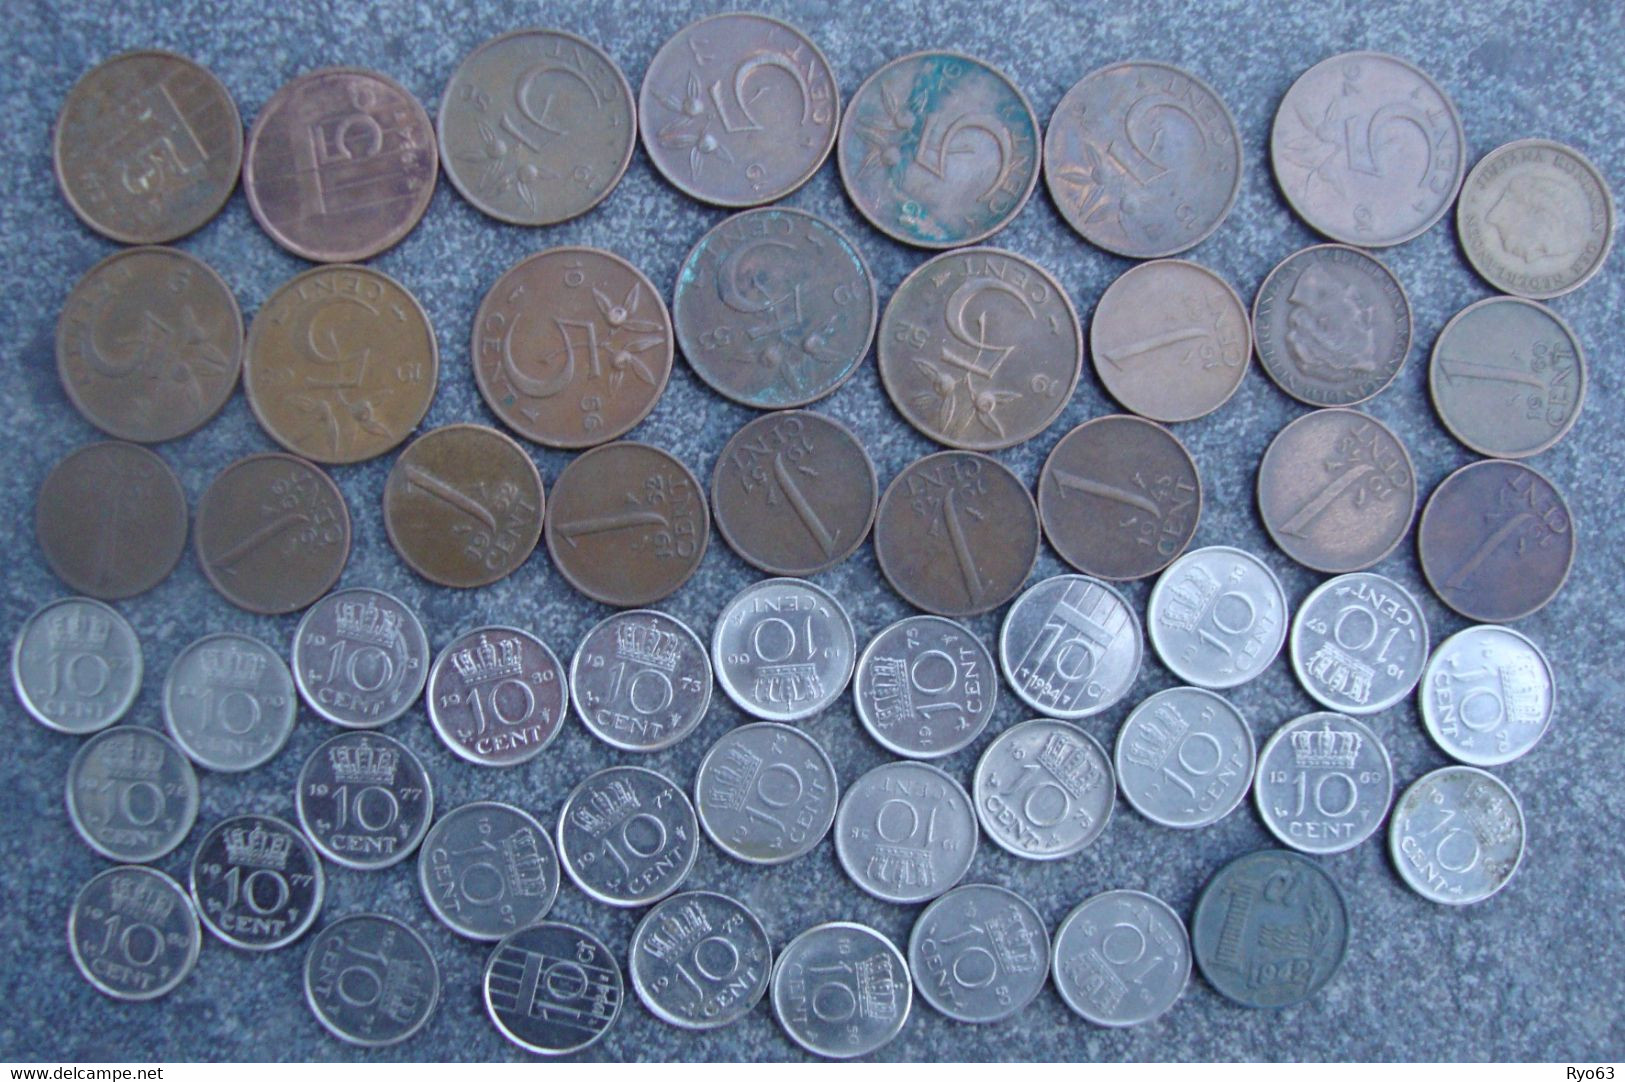 95 monnaies des Pays Bas